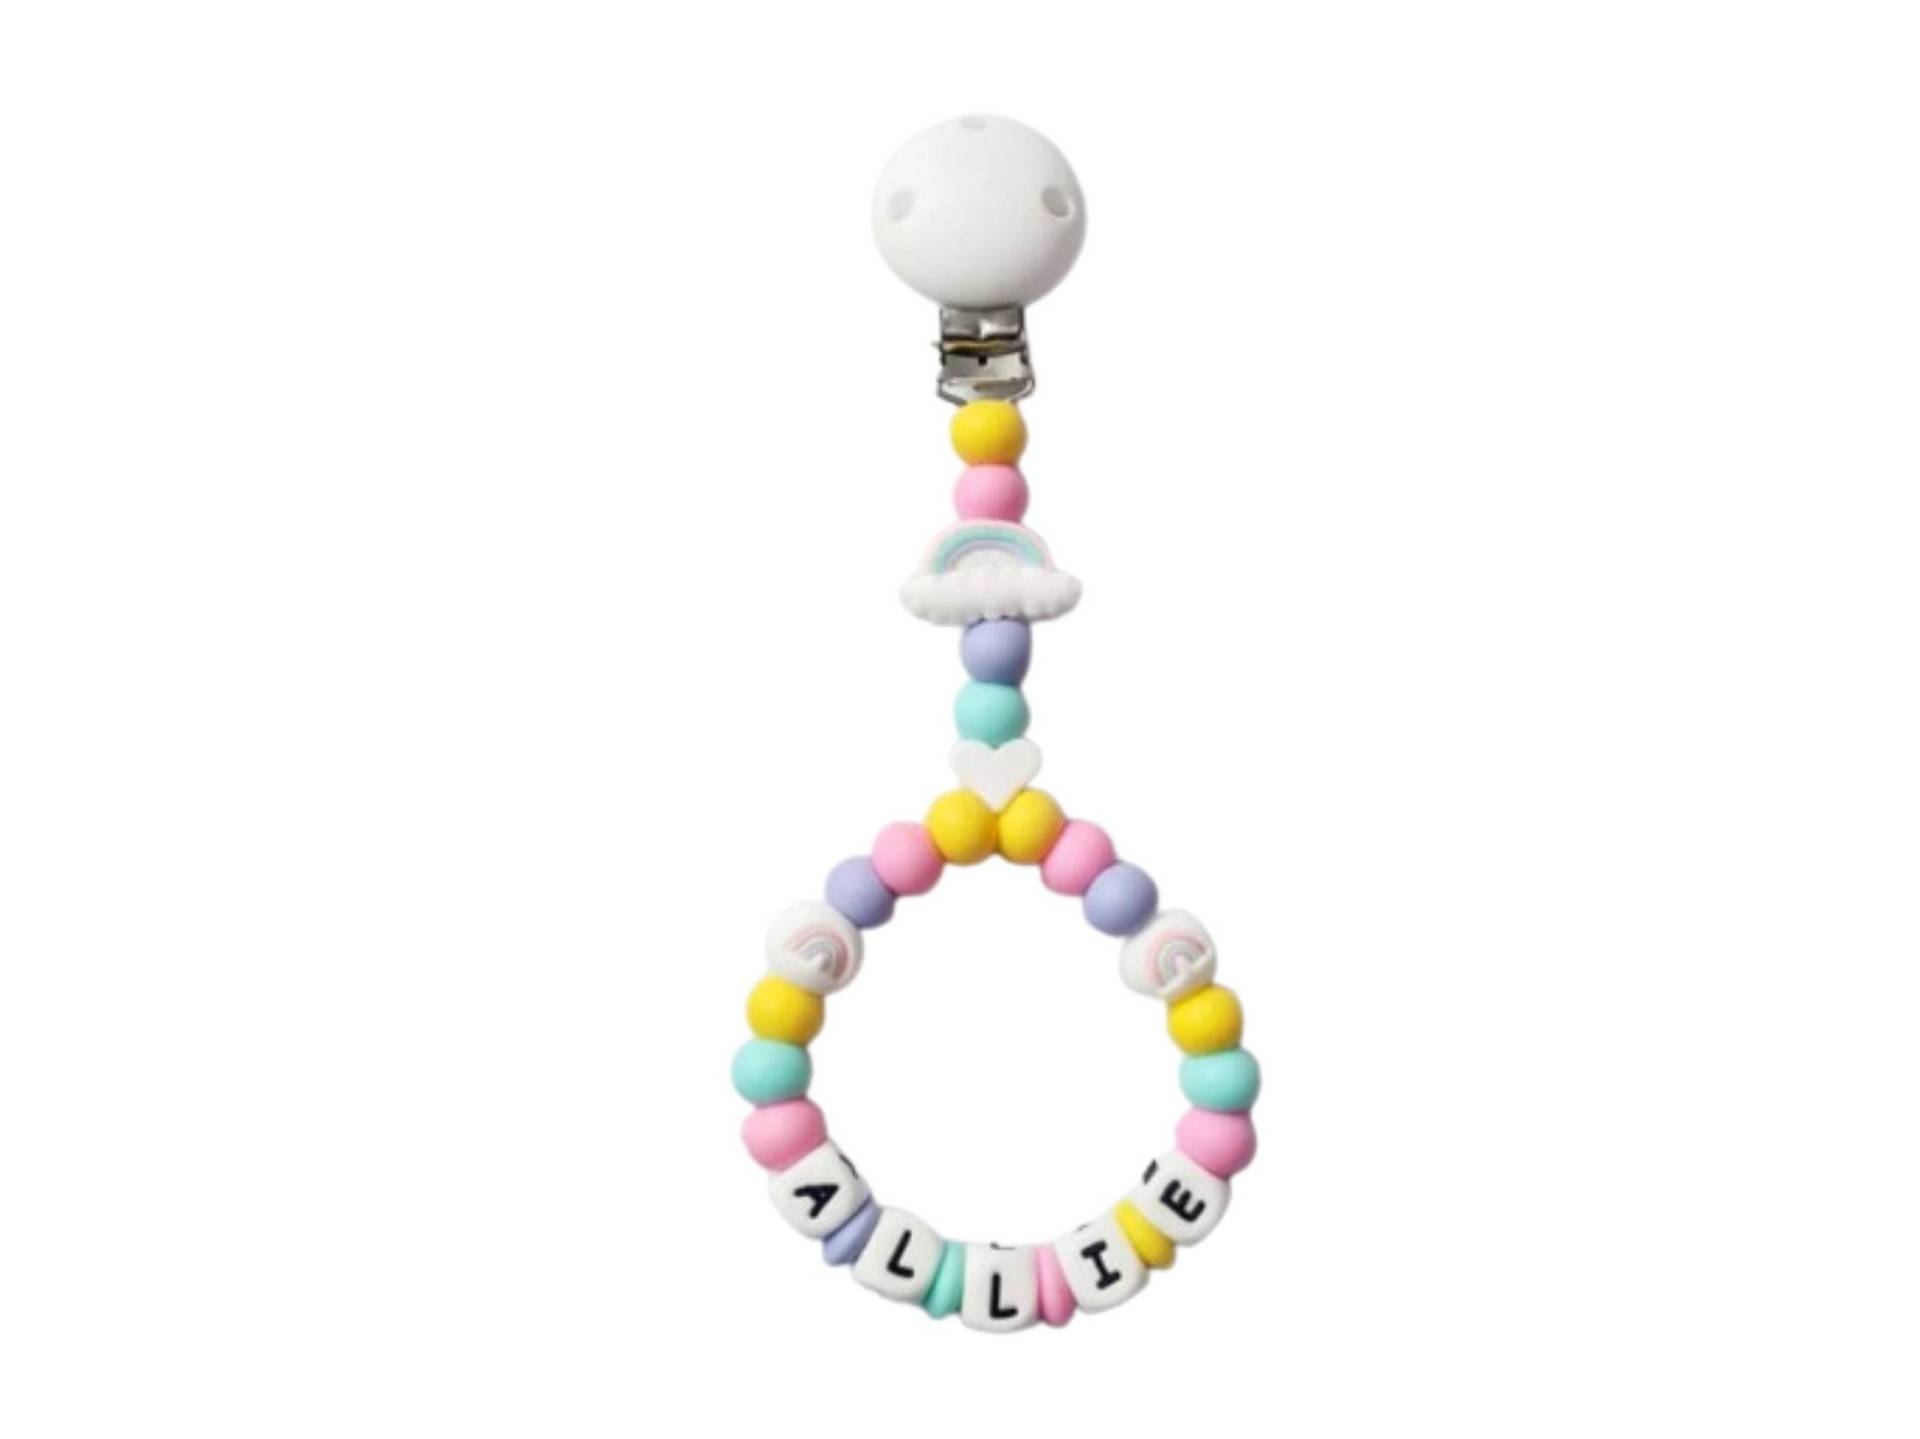 Silikon Handgemachte Personalisierte Pastell Helle Regenbogen Babys Kinderwagen Charm von Etsy - TwinkleStarBabyLtd